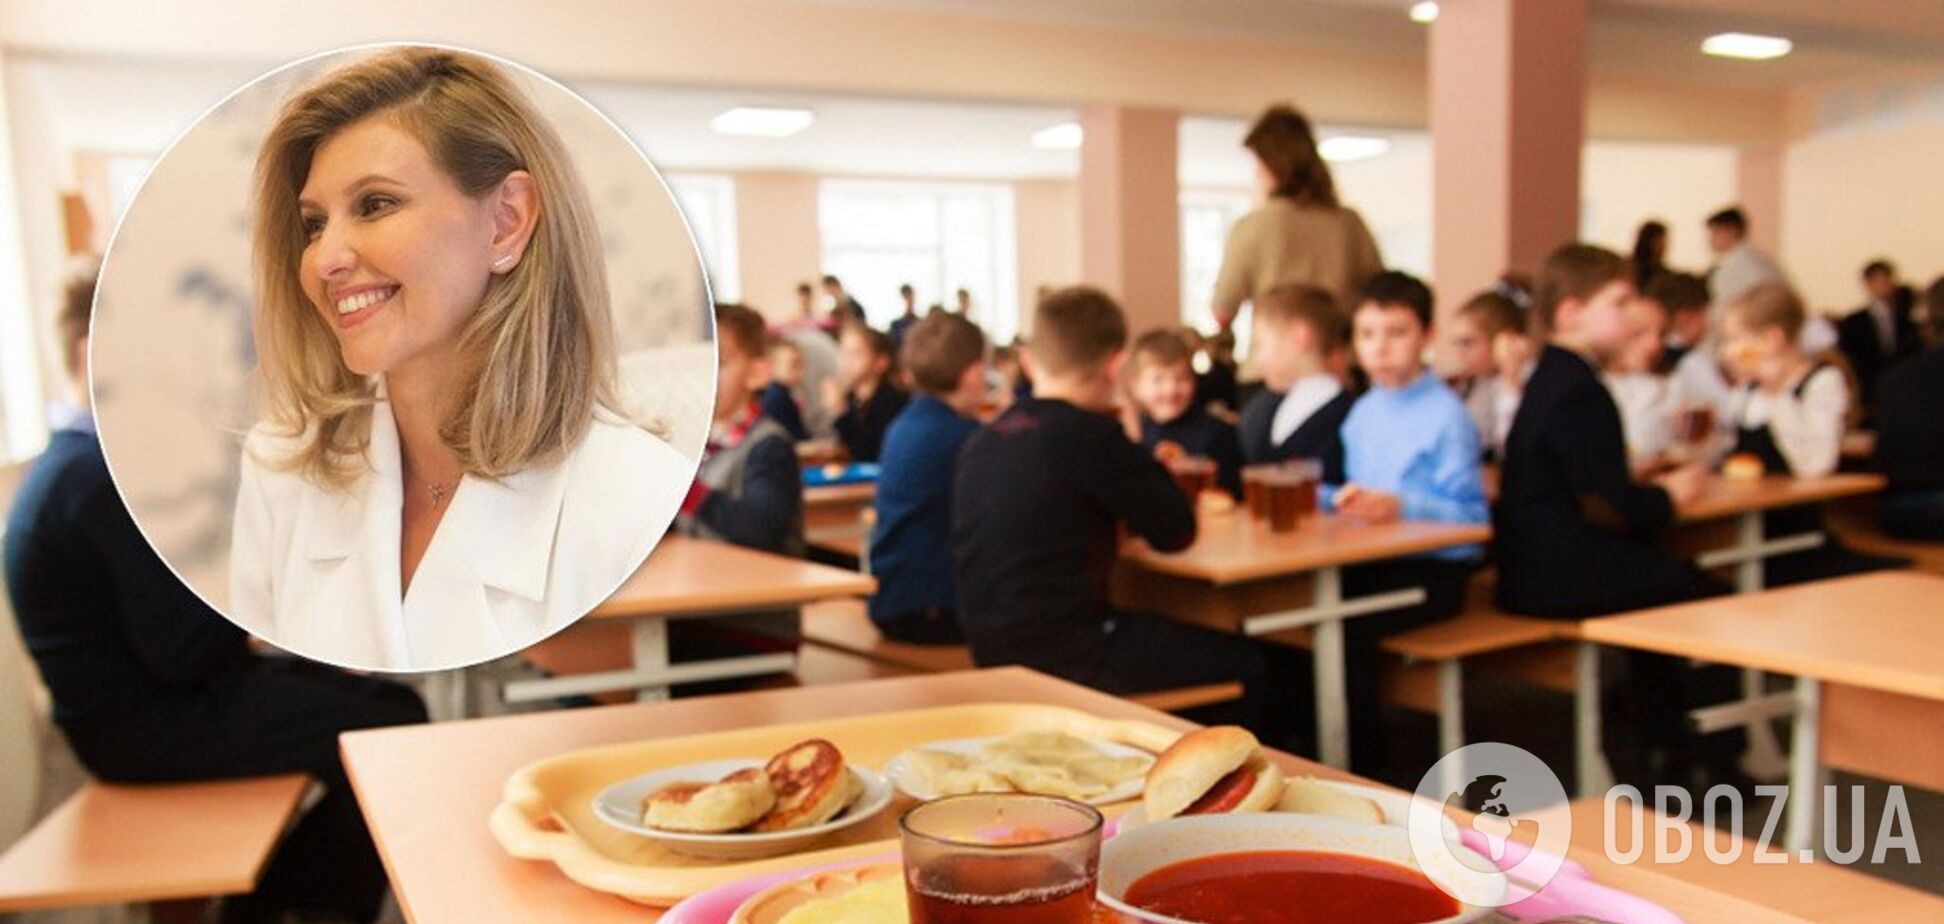 Щоб не гнили яблука: Олена Зеленська розкрила плани щодо харчування у школах